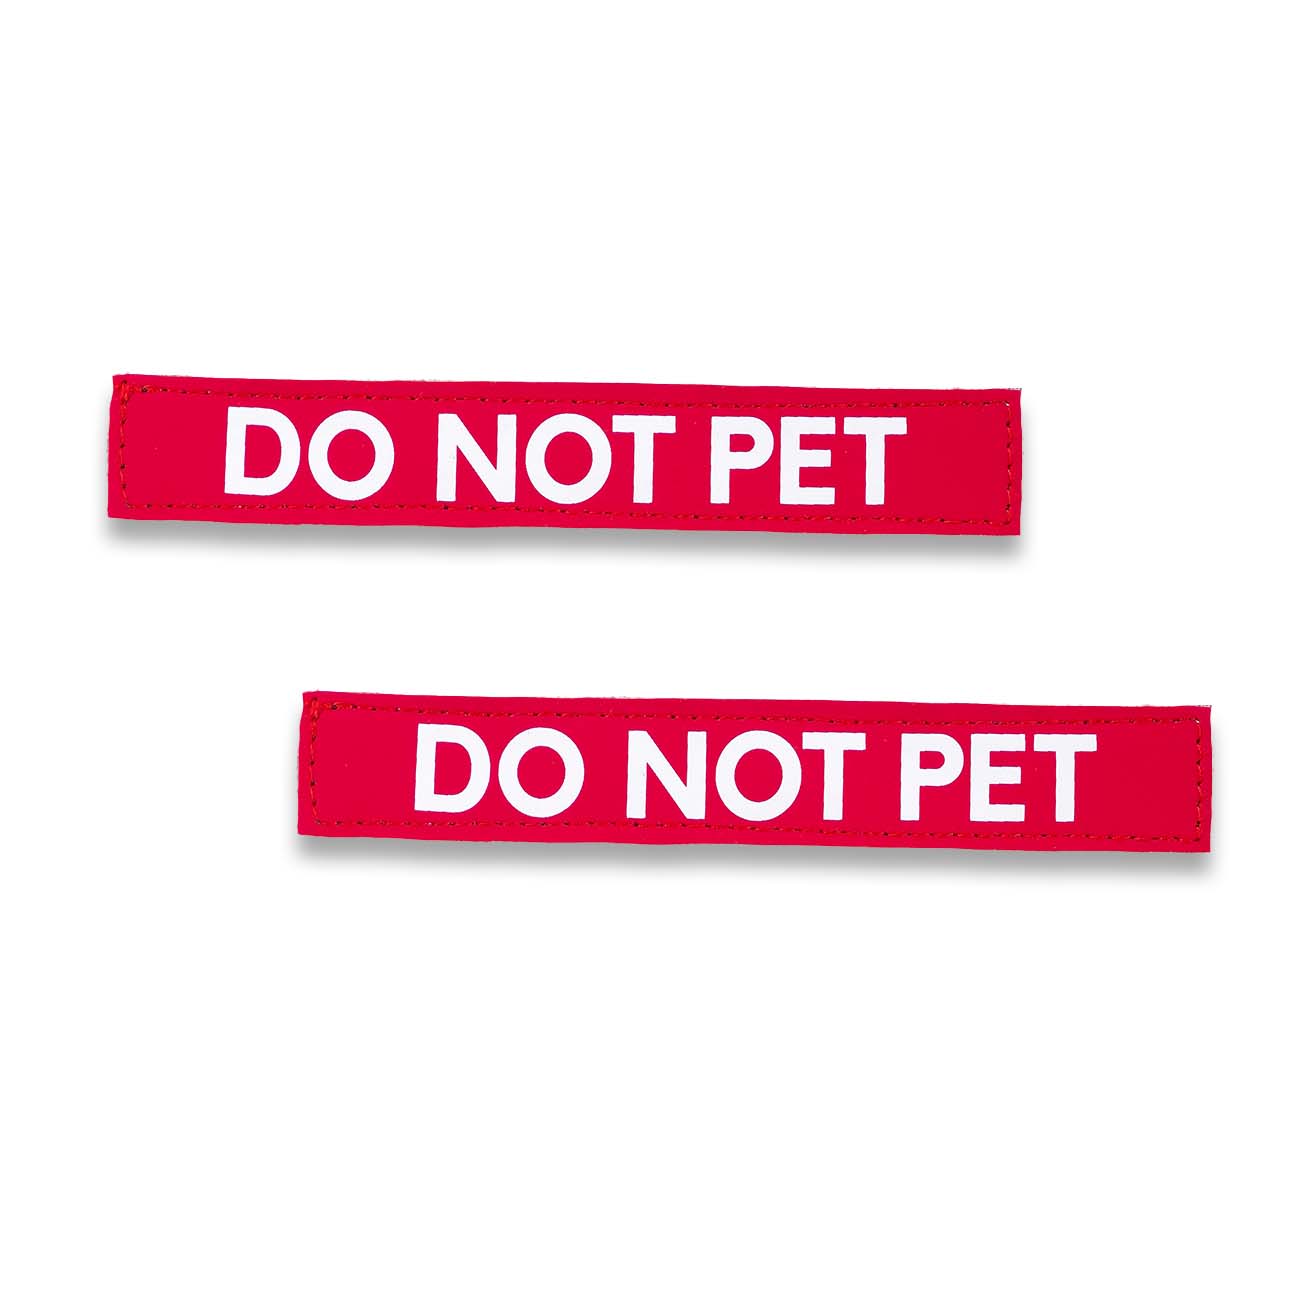 "DO NOT PET" Text Patch (2 pcs)